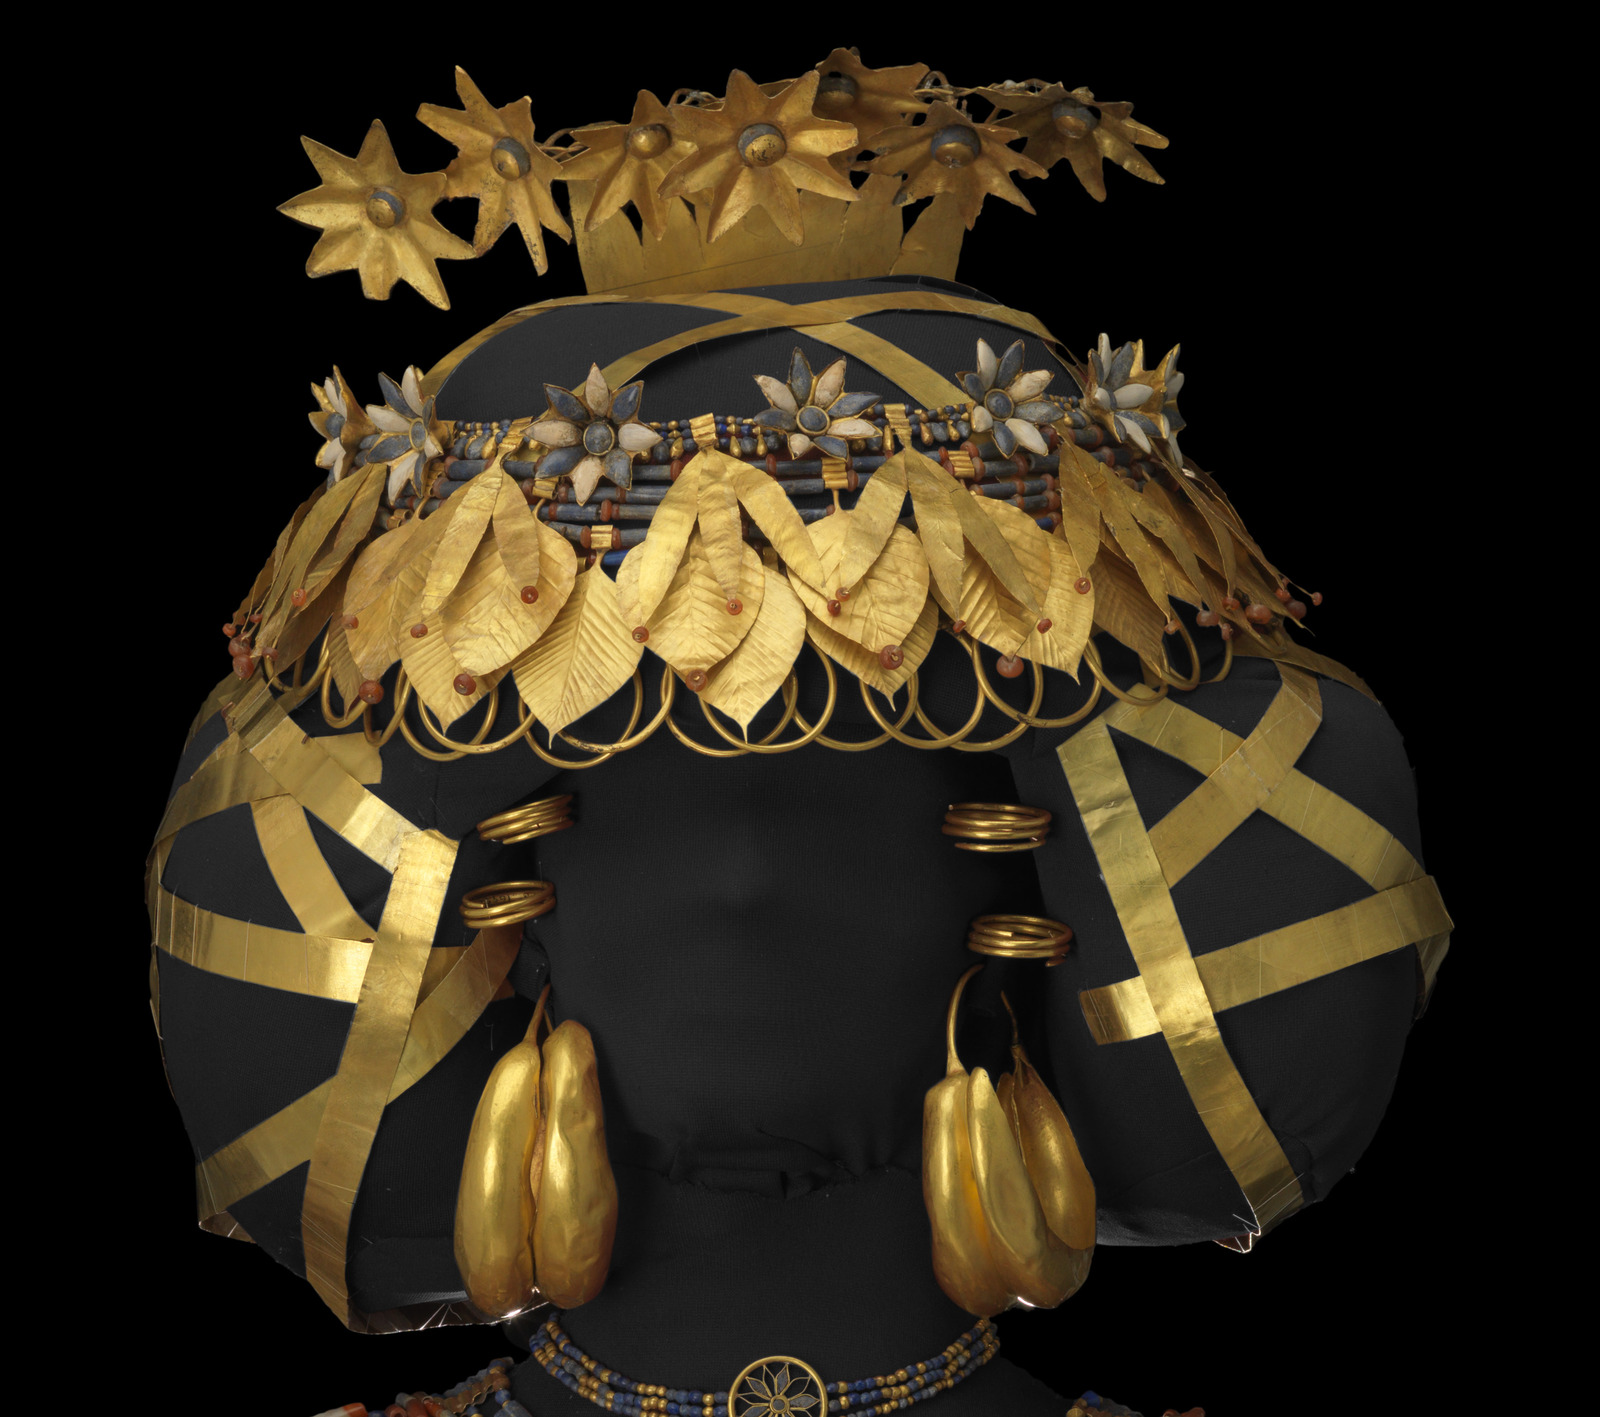 Drotttning Puabis hårsmycken från utgrävningarna i Ur. Kransar och hårband av guld och på toppen en kam av blommor i guld.